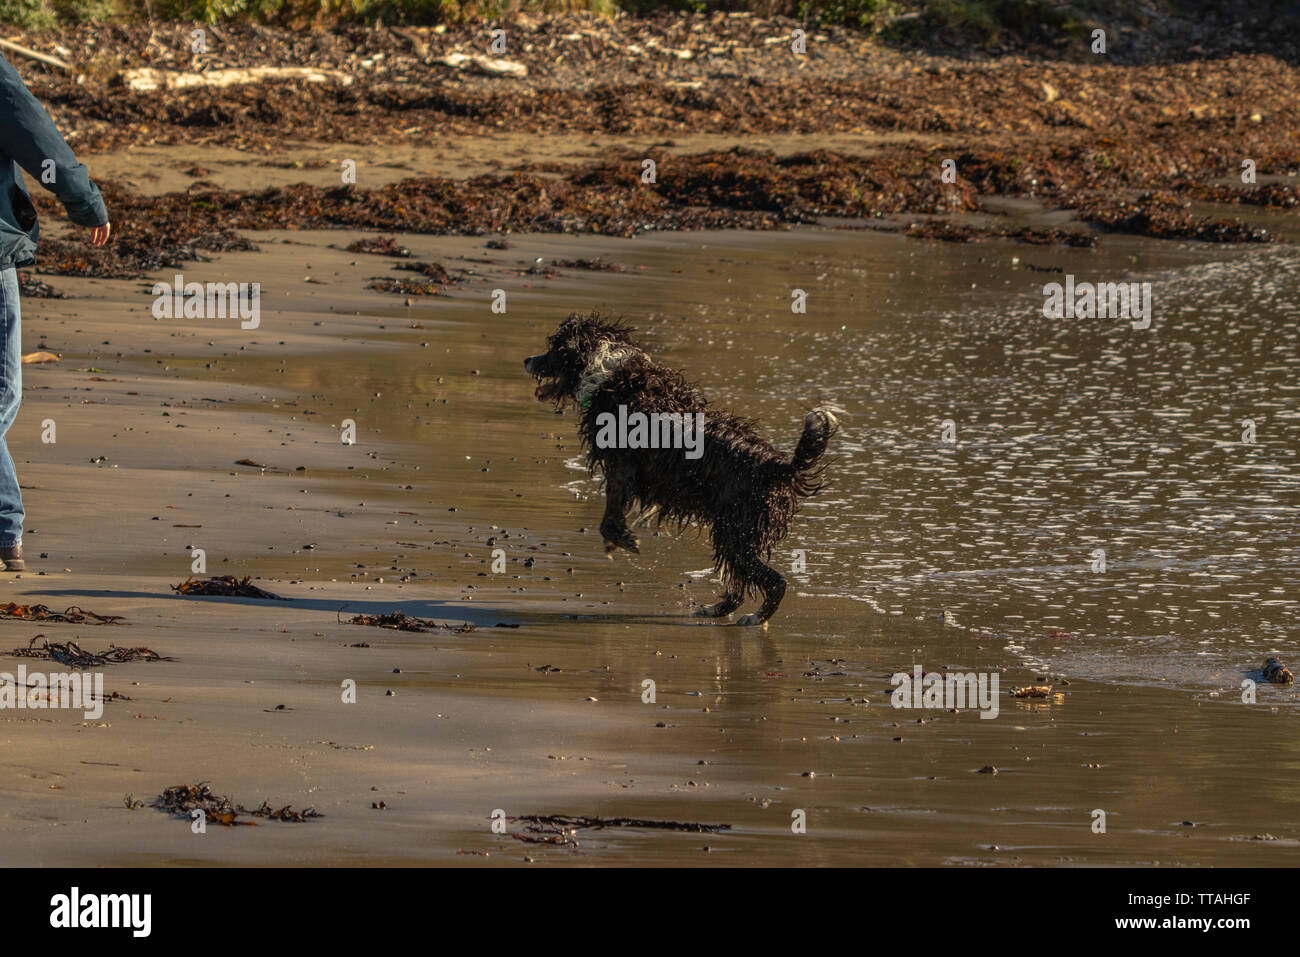 Shaggy dog poised to chase stick Stock Photo